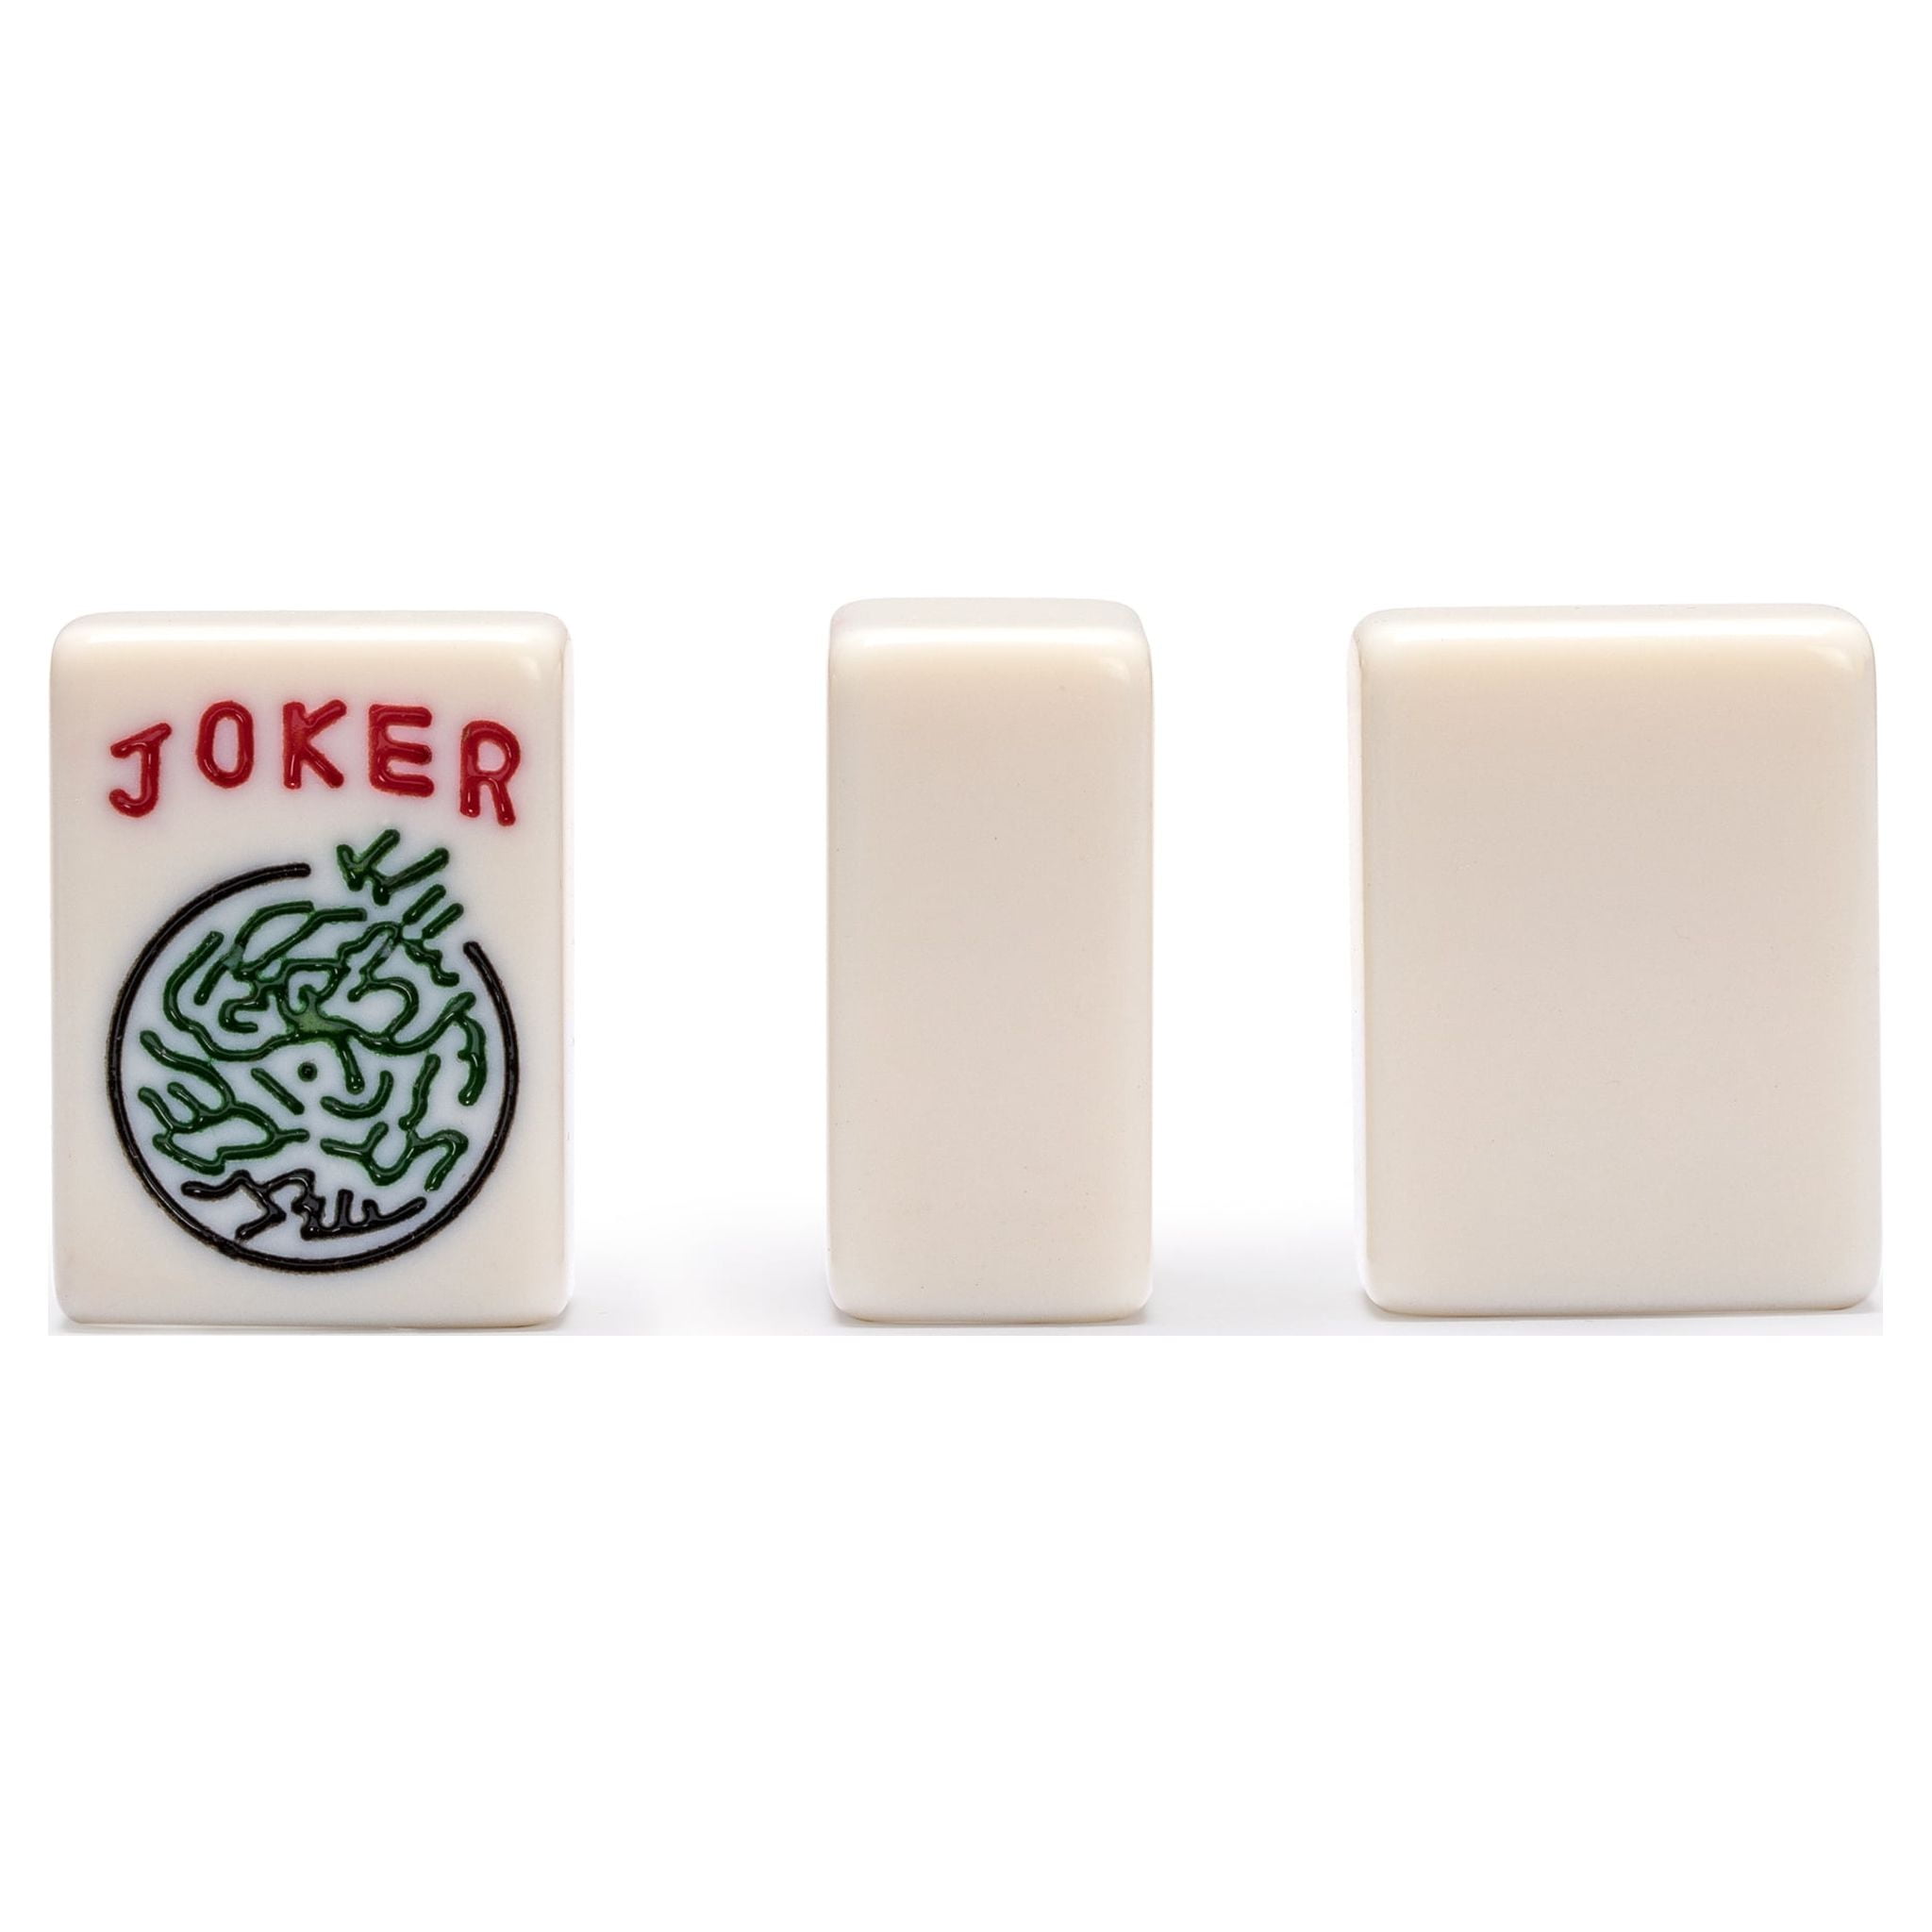 Sishynio American Mahjong Tiles Set, juego de Mah-Jong con tapete Mahjong  de 31.5 pulgadas, 166 azulejos Mahjong y 4 empujadores y chips todo en uno